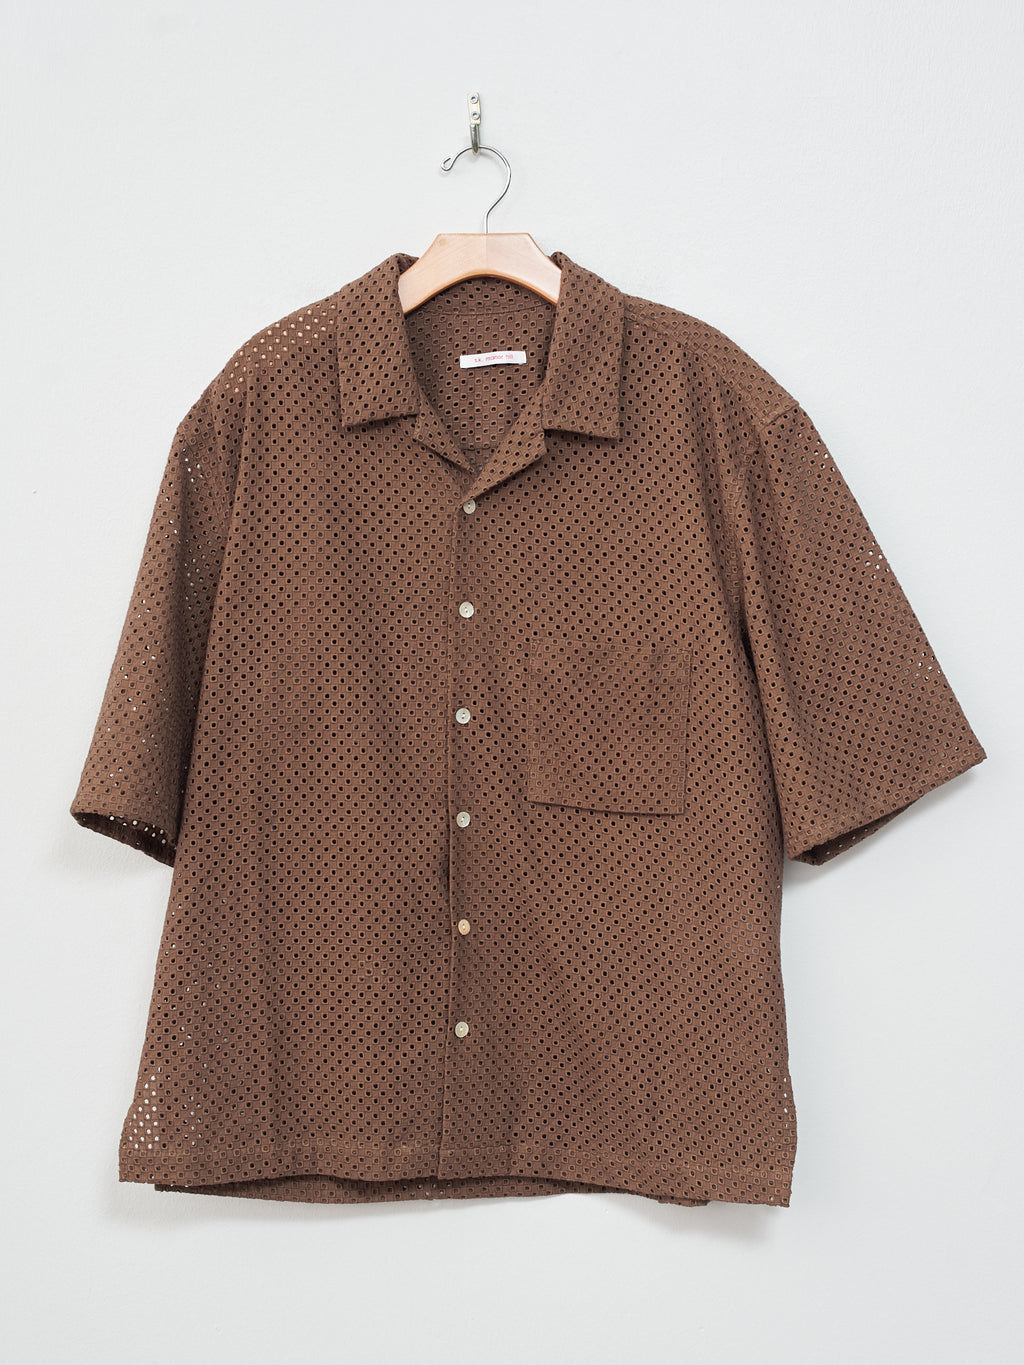 Namu Shop - S.K. Manor Hill Aloha Shirt - Brown Check-Embroidered Cotton